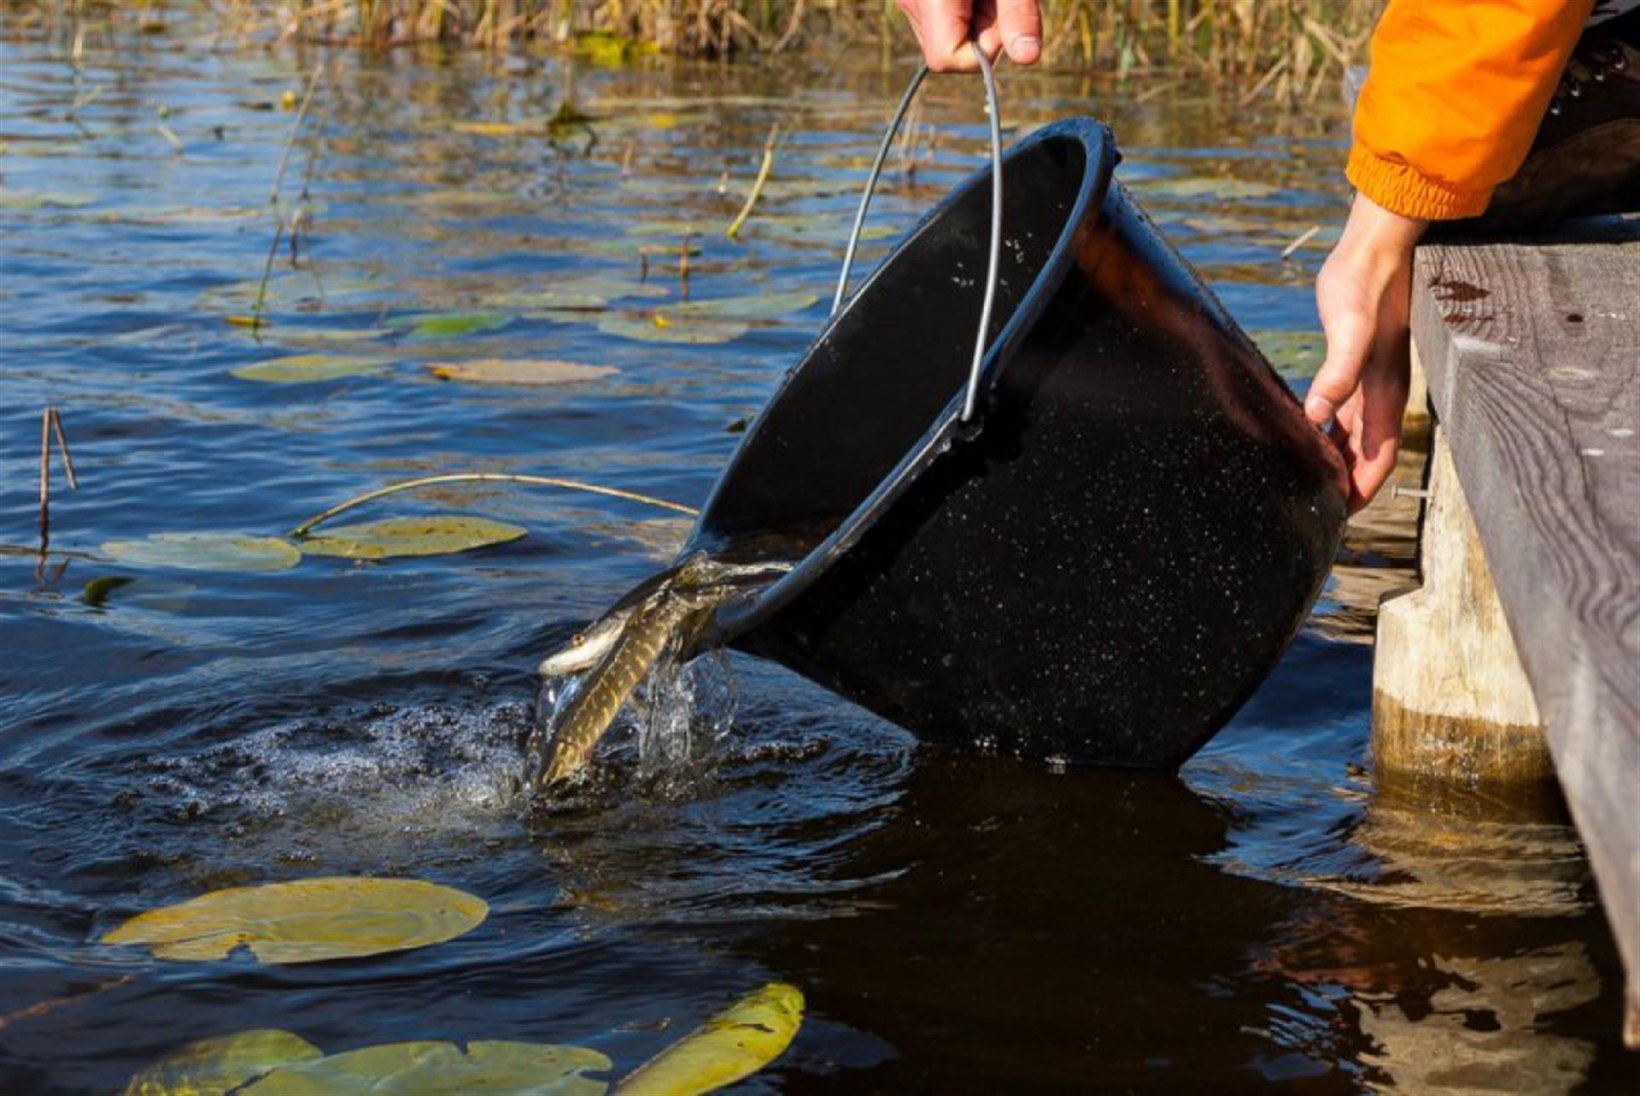 Keskkonnaamet: kalu tohib veekogusse asustada ainult Keskkonnaameti loal